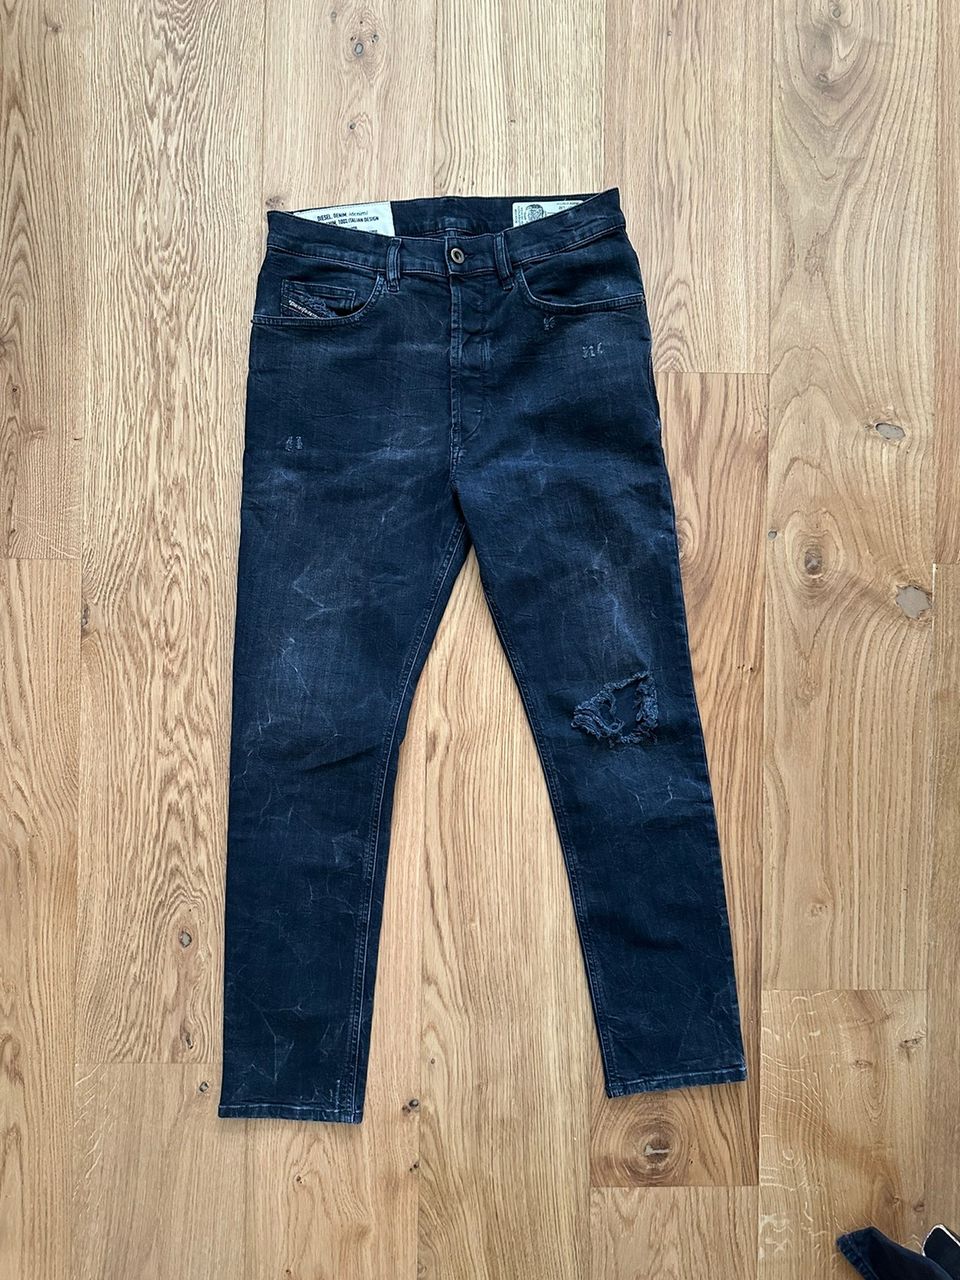 Diesel Distressed Slim Jeans size 31 x 32